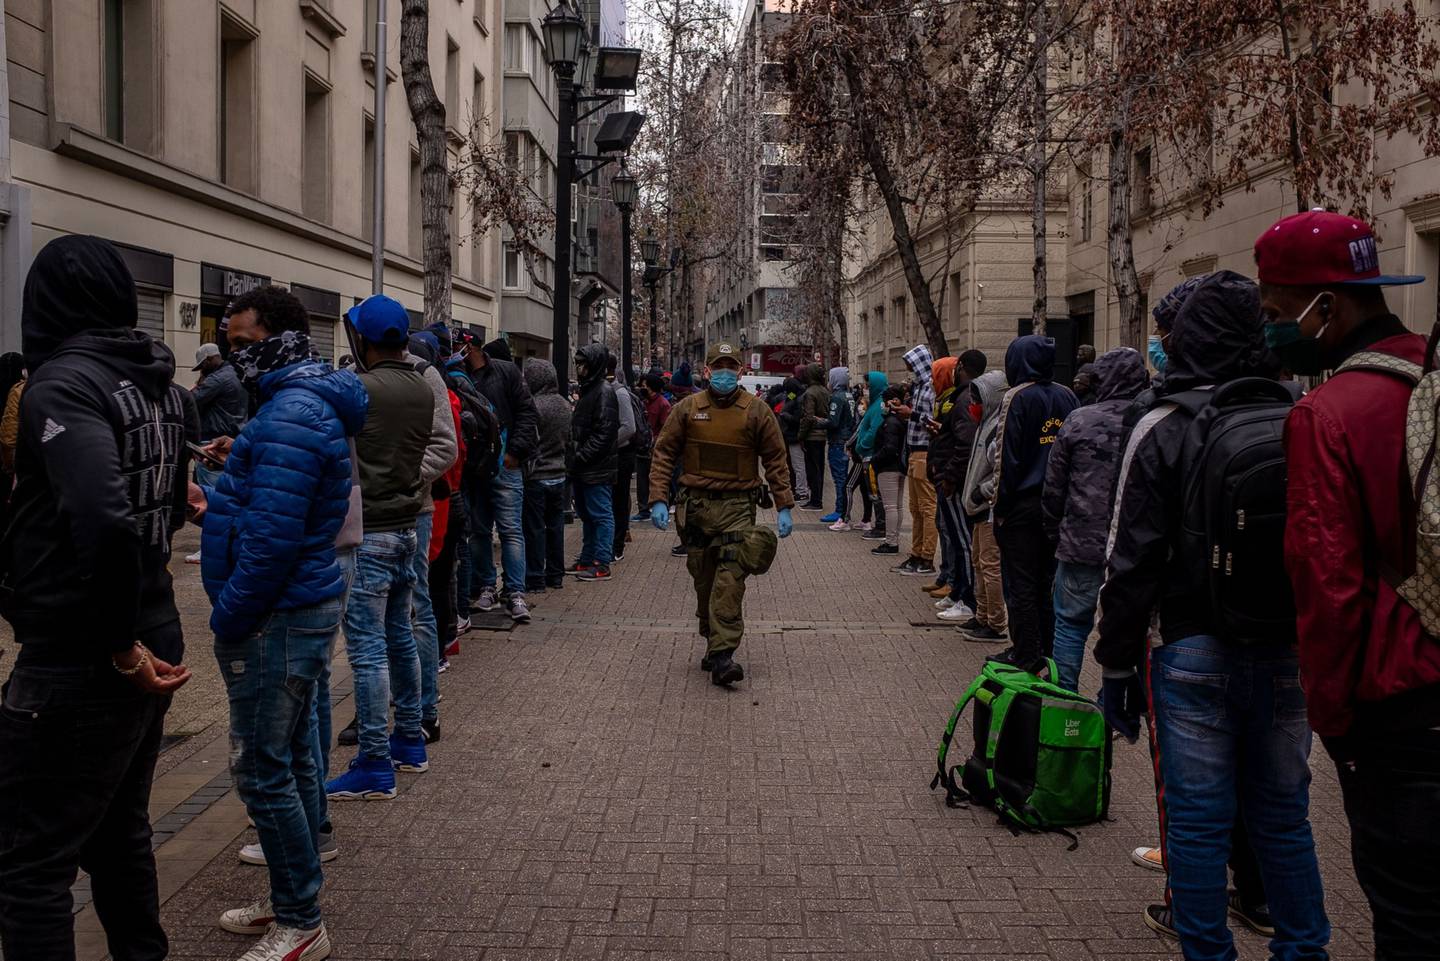 Un oficial de policía con máscaras protectoras camina entre una fila de personas que esperan afuera de una oficina de administración de fondos de pensiones en Santiago, Chile, el lunes 27 de julio de 2020.dfd